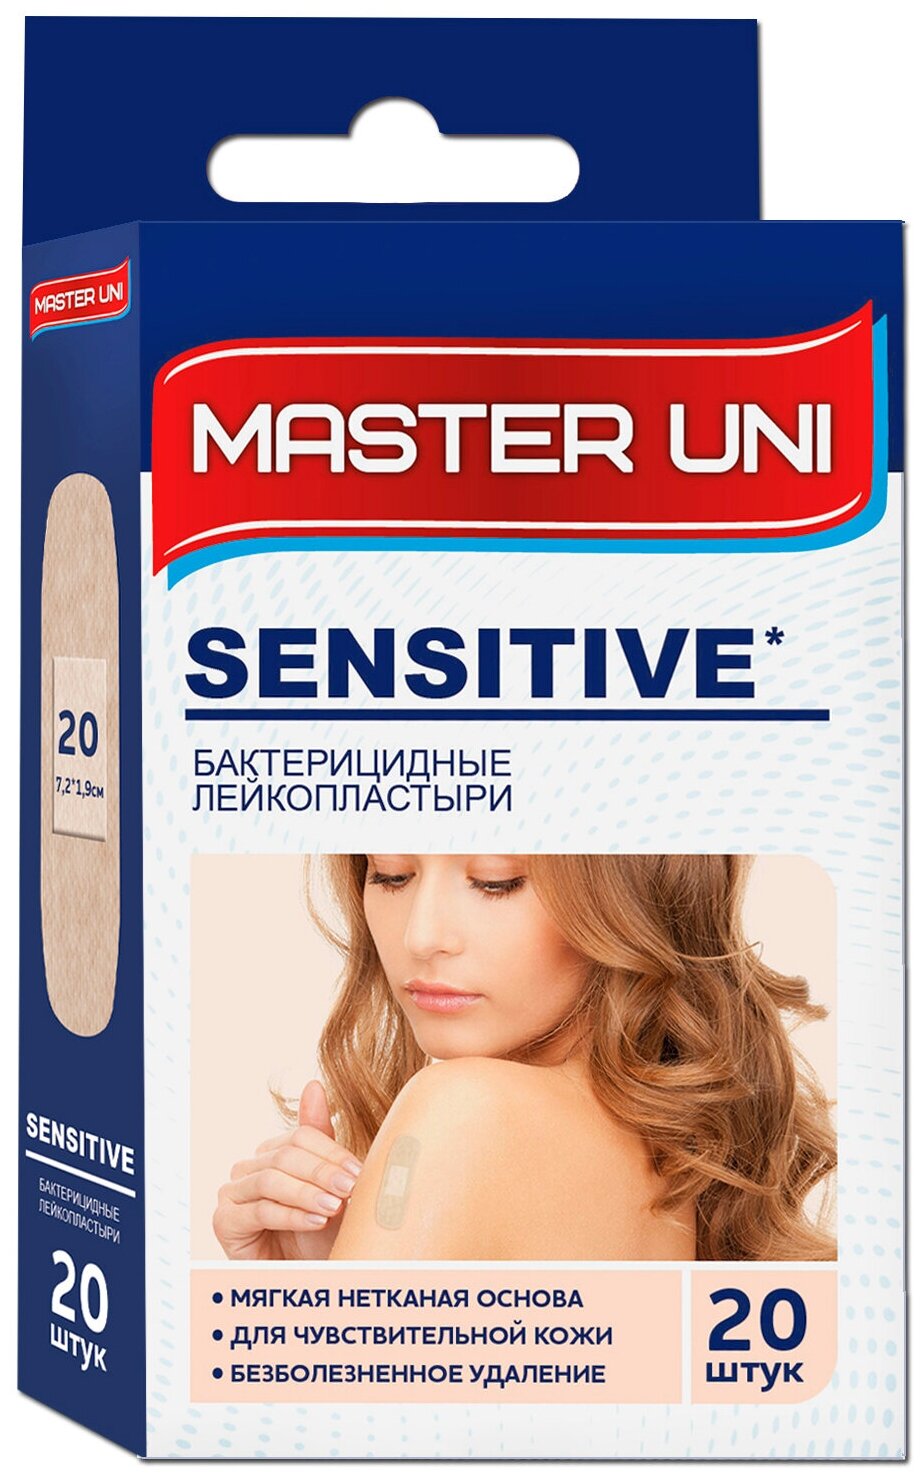 Master Uni Sensitive лейкопластырь бактерицидный на нетканой основе